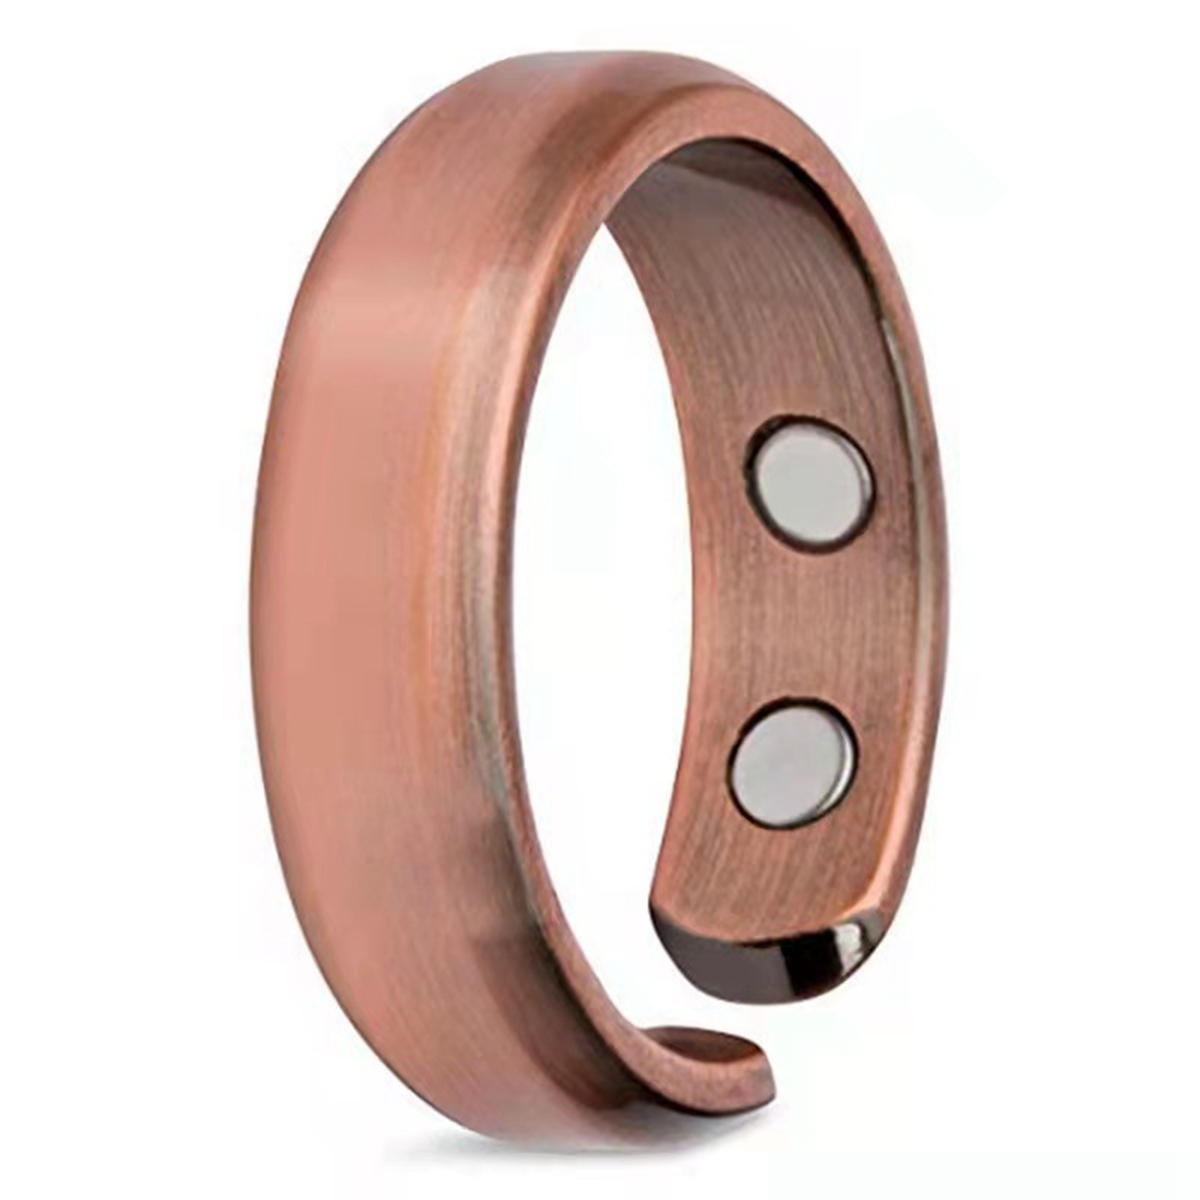 12шт модный магнитный здравоохранение кольцо для мужчин Женские украшения подарка